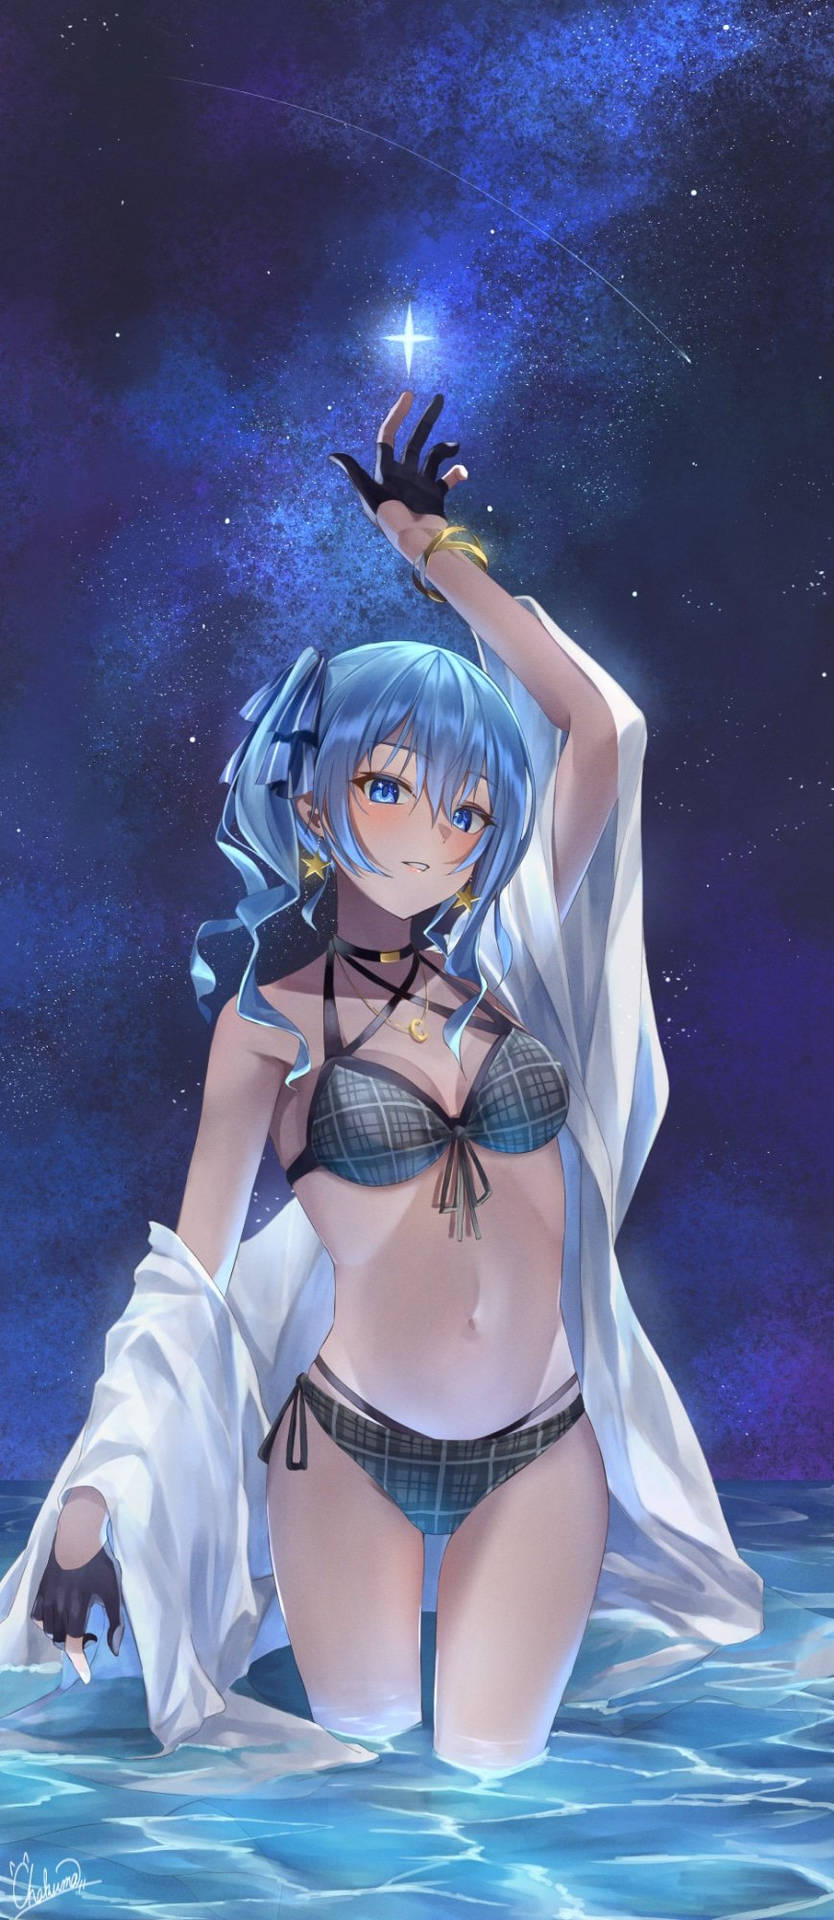 Anime Girl In Bikini At Night Background